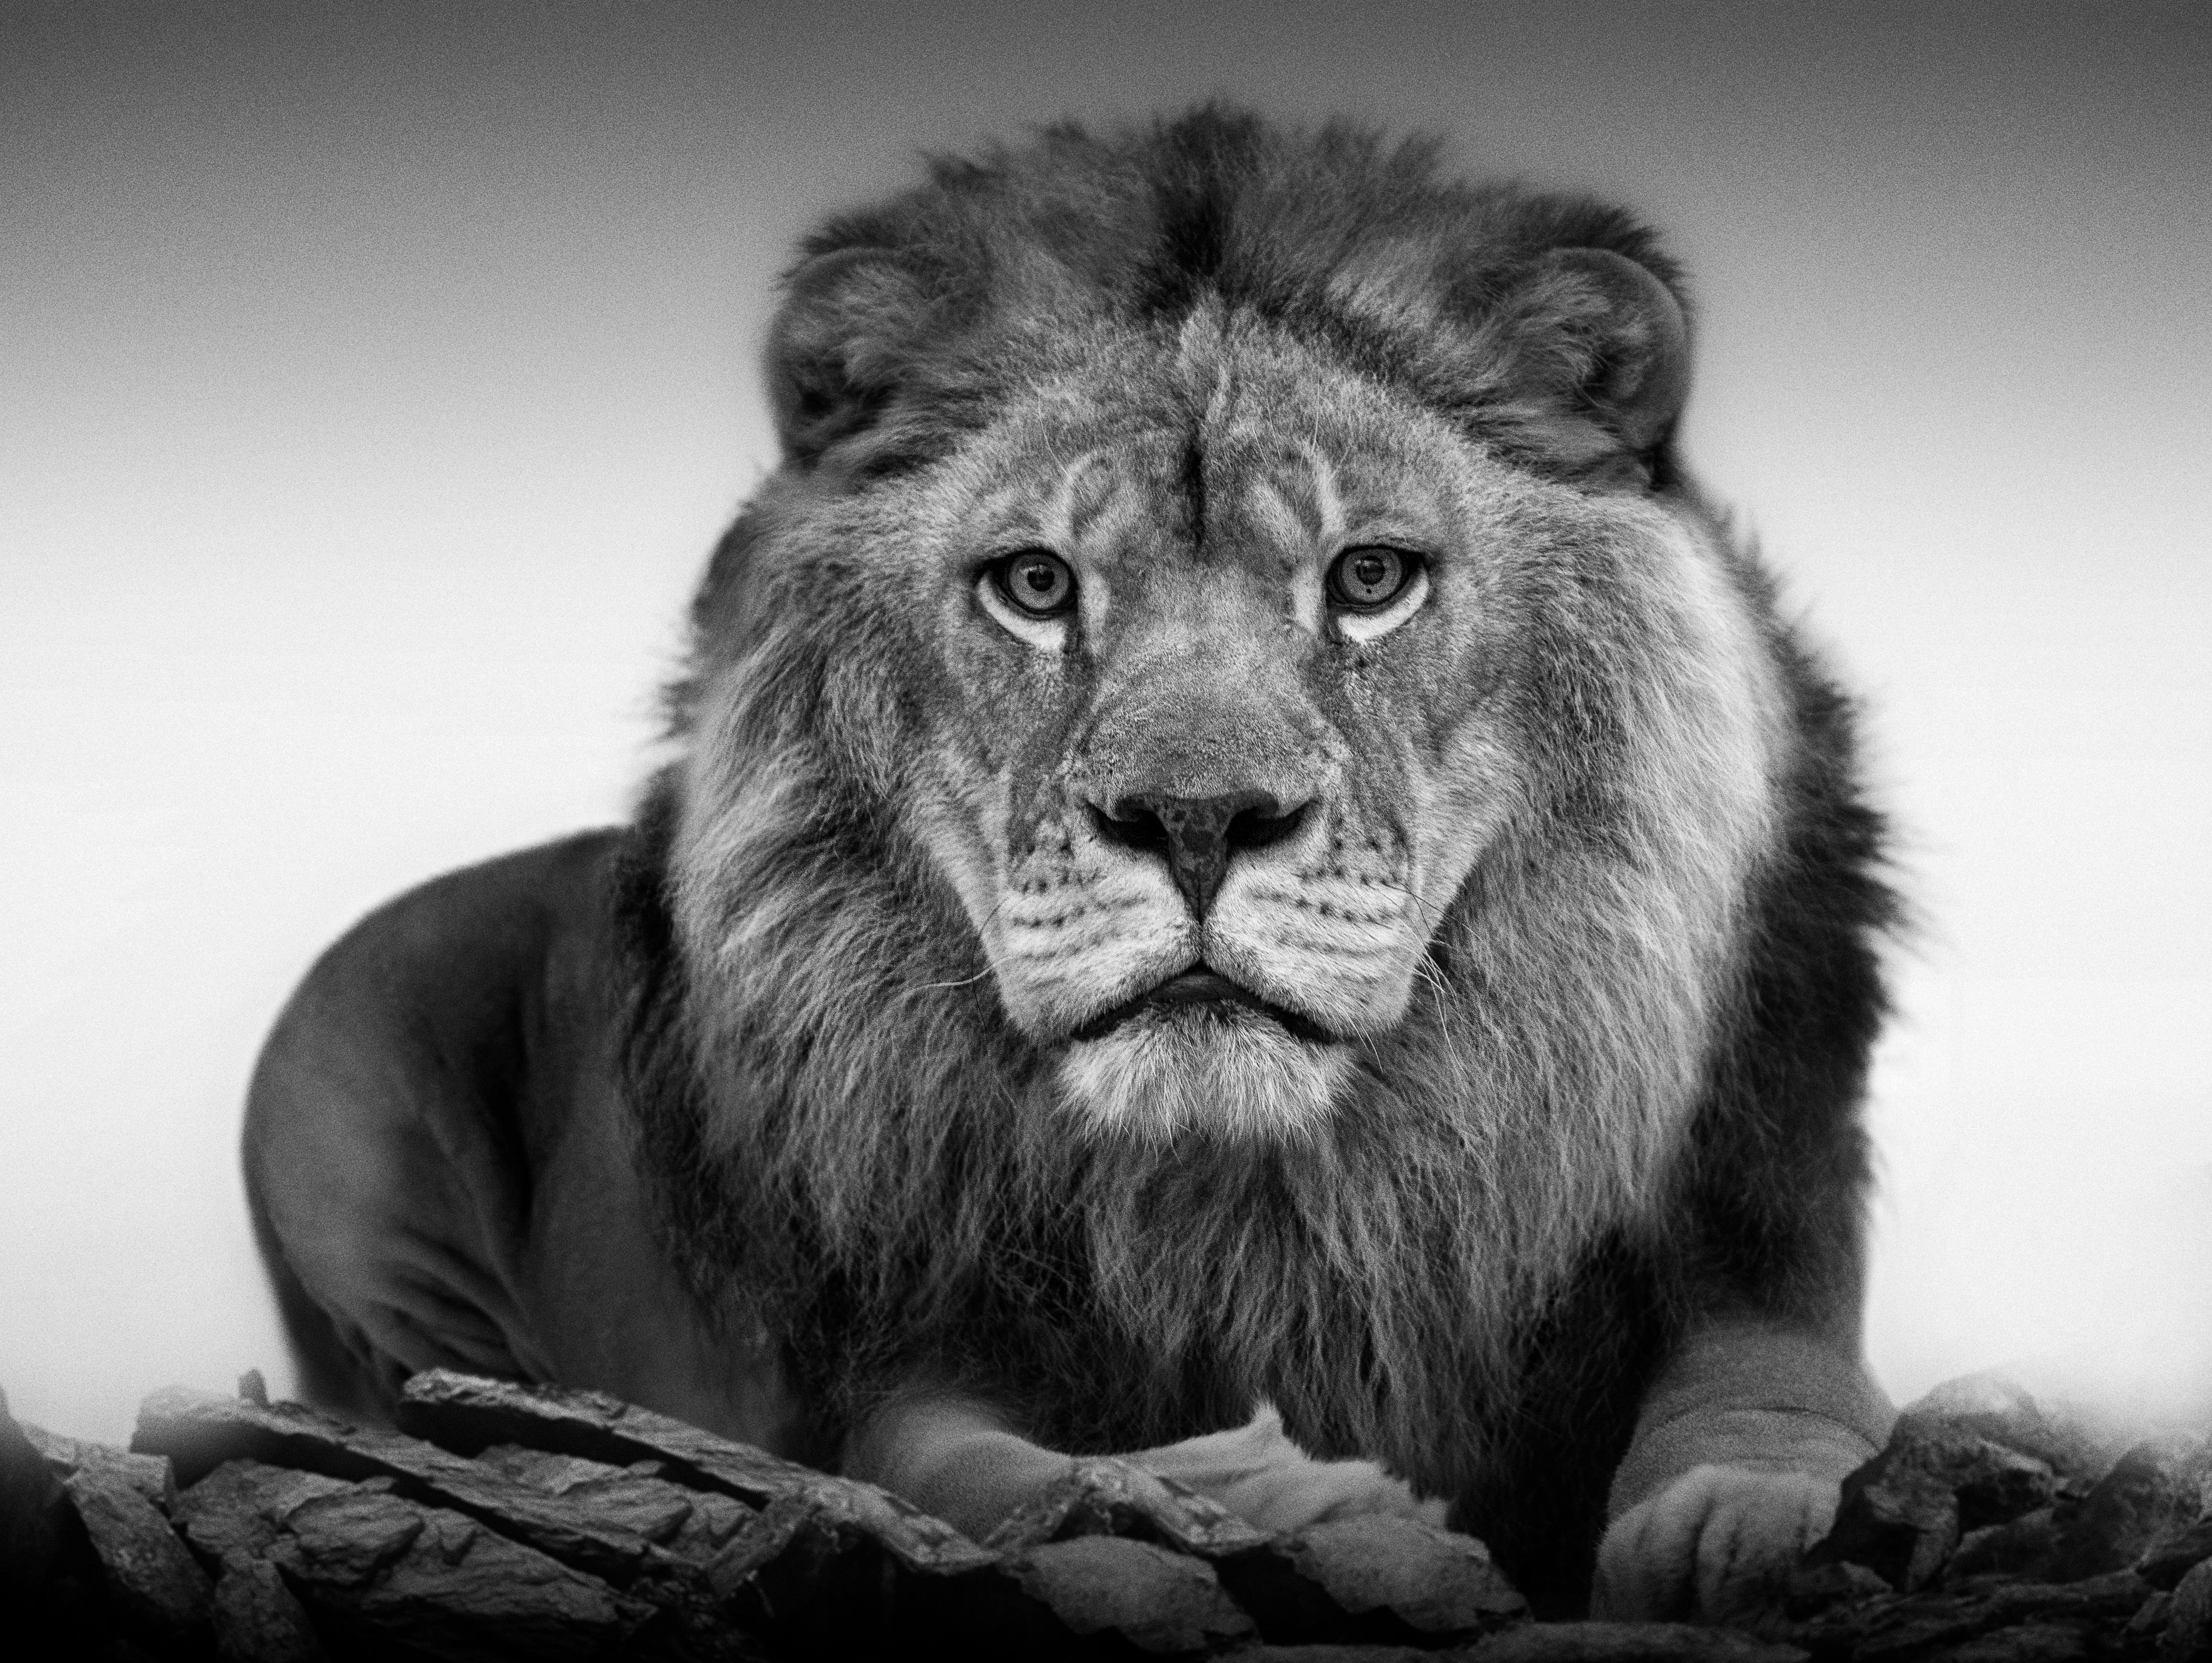  Lion Portrait - 36x48 Black & White Photography, African Lion Photograph Art